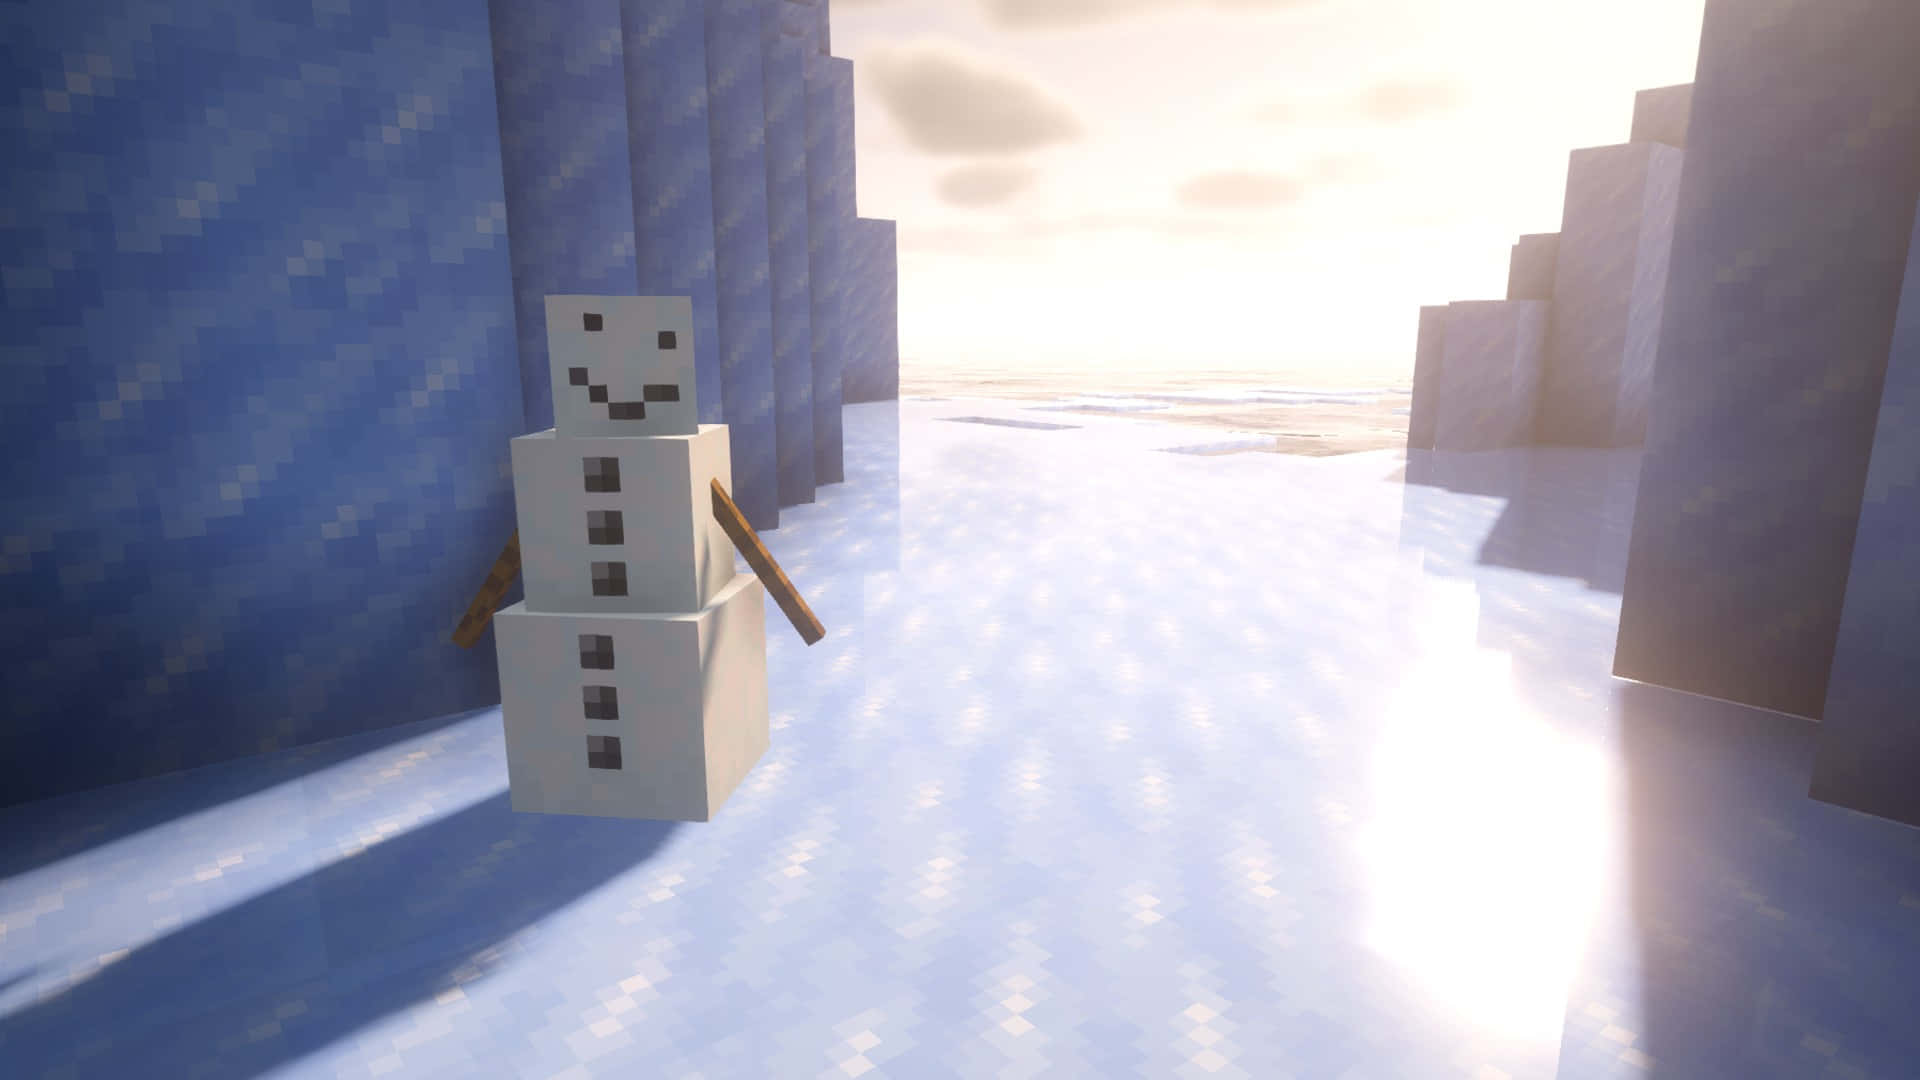 Elgólem De Nieve De Minecraft Se Encuentra Orgulloso En Un Bioma Nevado. Fondo de pantalla